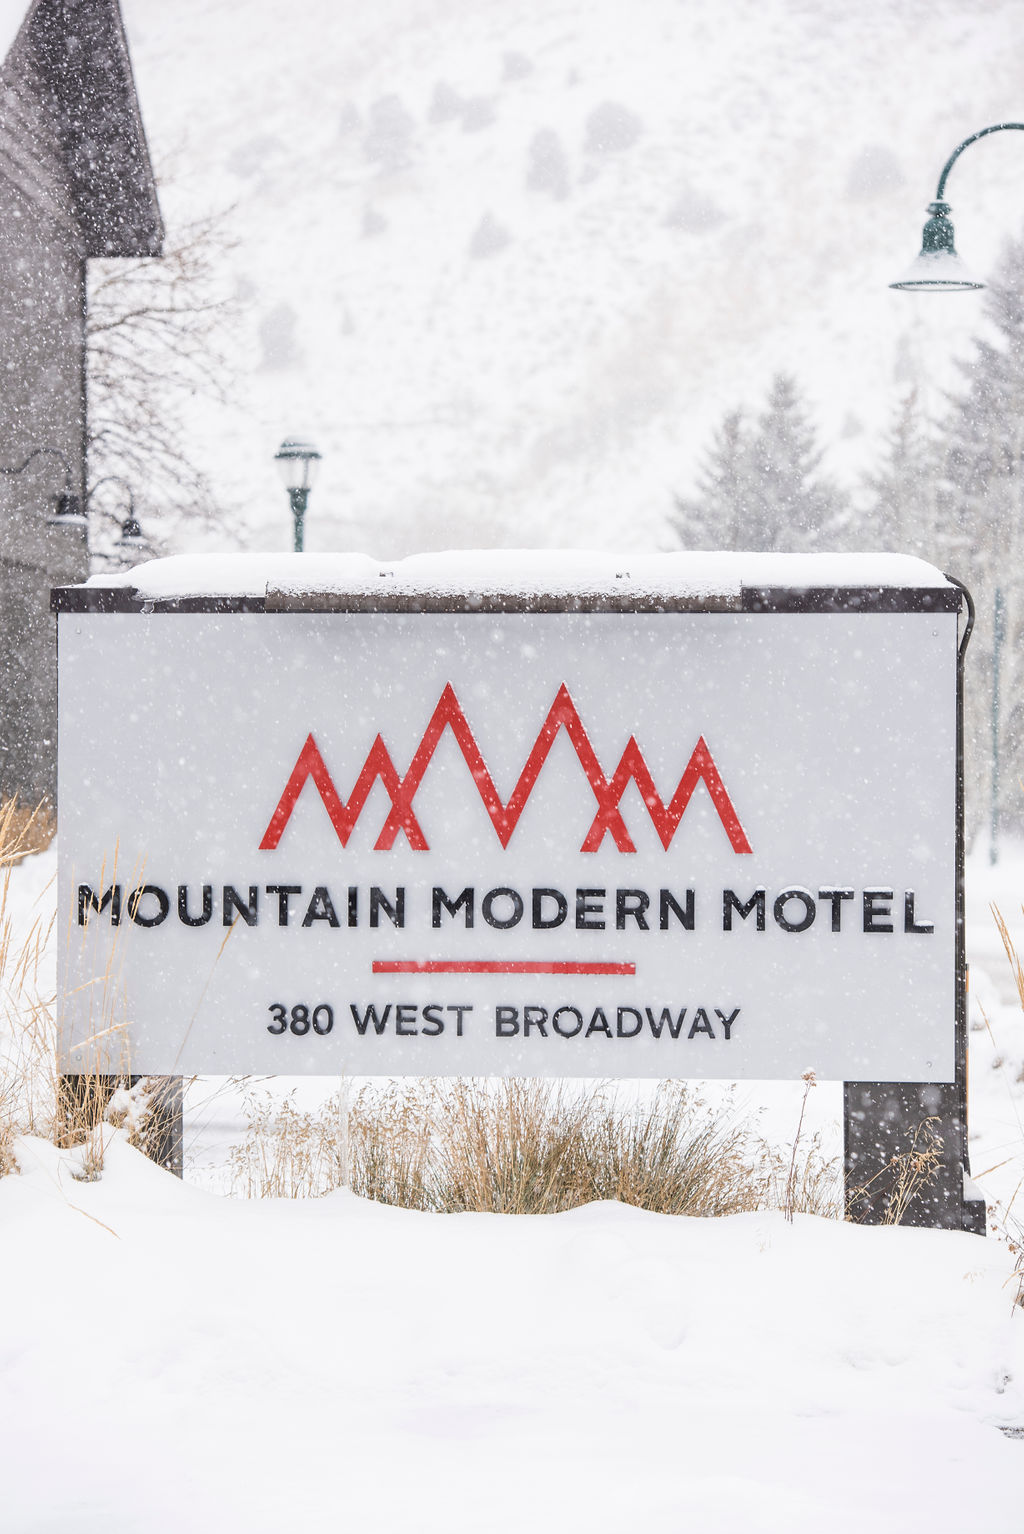 Mountain Modern Motal sign outside motel